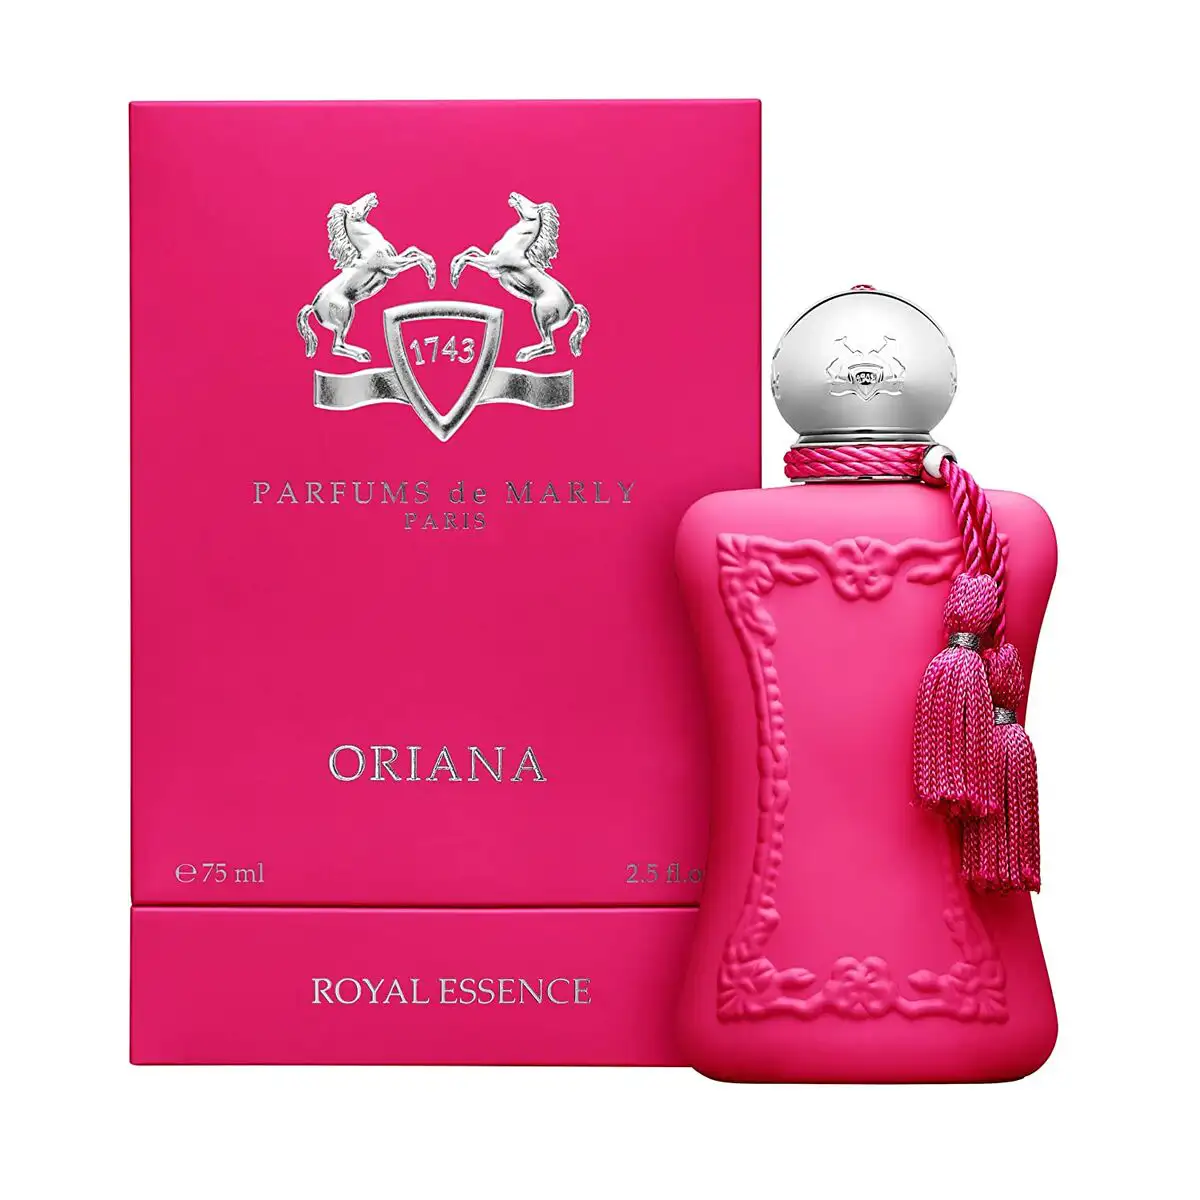 Parfum femme parfums de marly edp oriana 75 ml_7301. DIAYTAR SENEGAL - Là où Chaque Produit a son Histoire. Découvrez notre gamme de produits, chacun portant en lui le récit de l'artisanat et de la passion, pour vous offrir une expérience de shopping authentique.